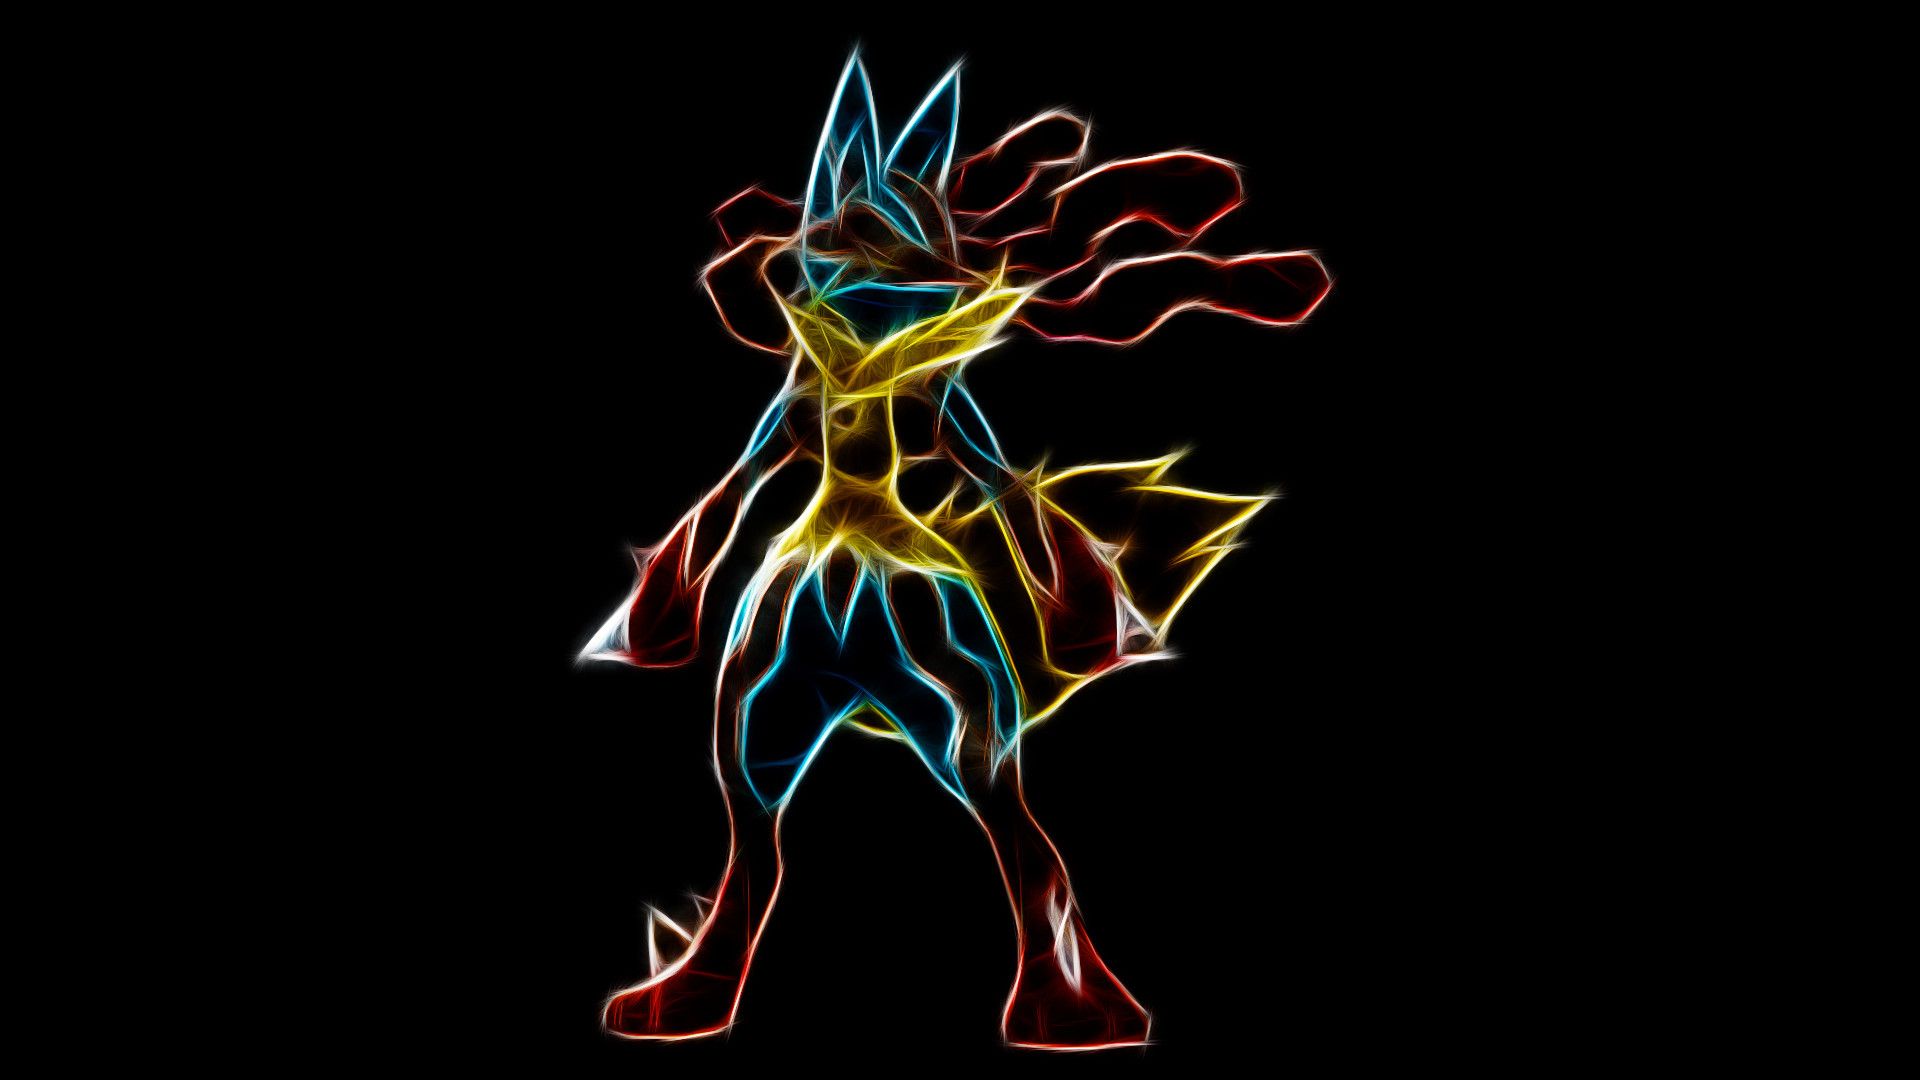 Lucario: Lucario là một trong những Pokémon thông minh và mạnh mẽ nhất. Xem hình ảnh của Lucario để khám phá sức mạnh và tài năng của Pokémon này.